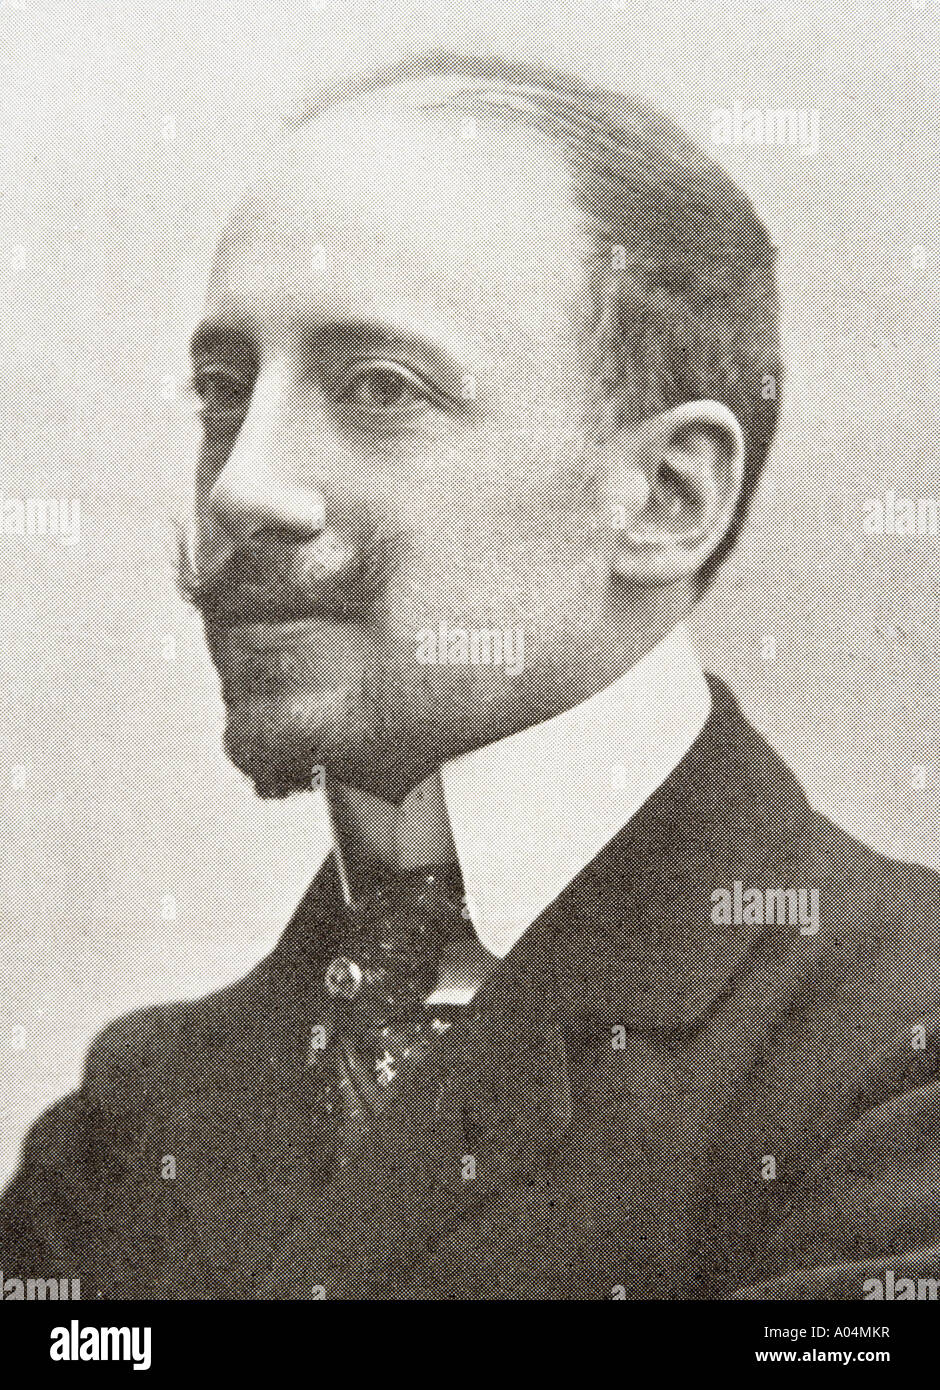 Gabriele D'Annunzio, Principe di Montenevoso, Duca di Gallese, 1863 - 1938. Poeta, giornalista, drammaturgo e soldato italiano. Foto Stock